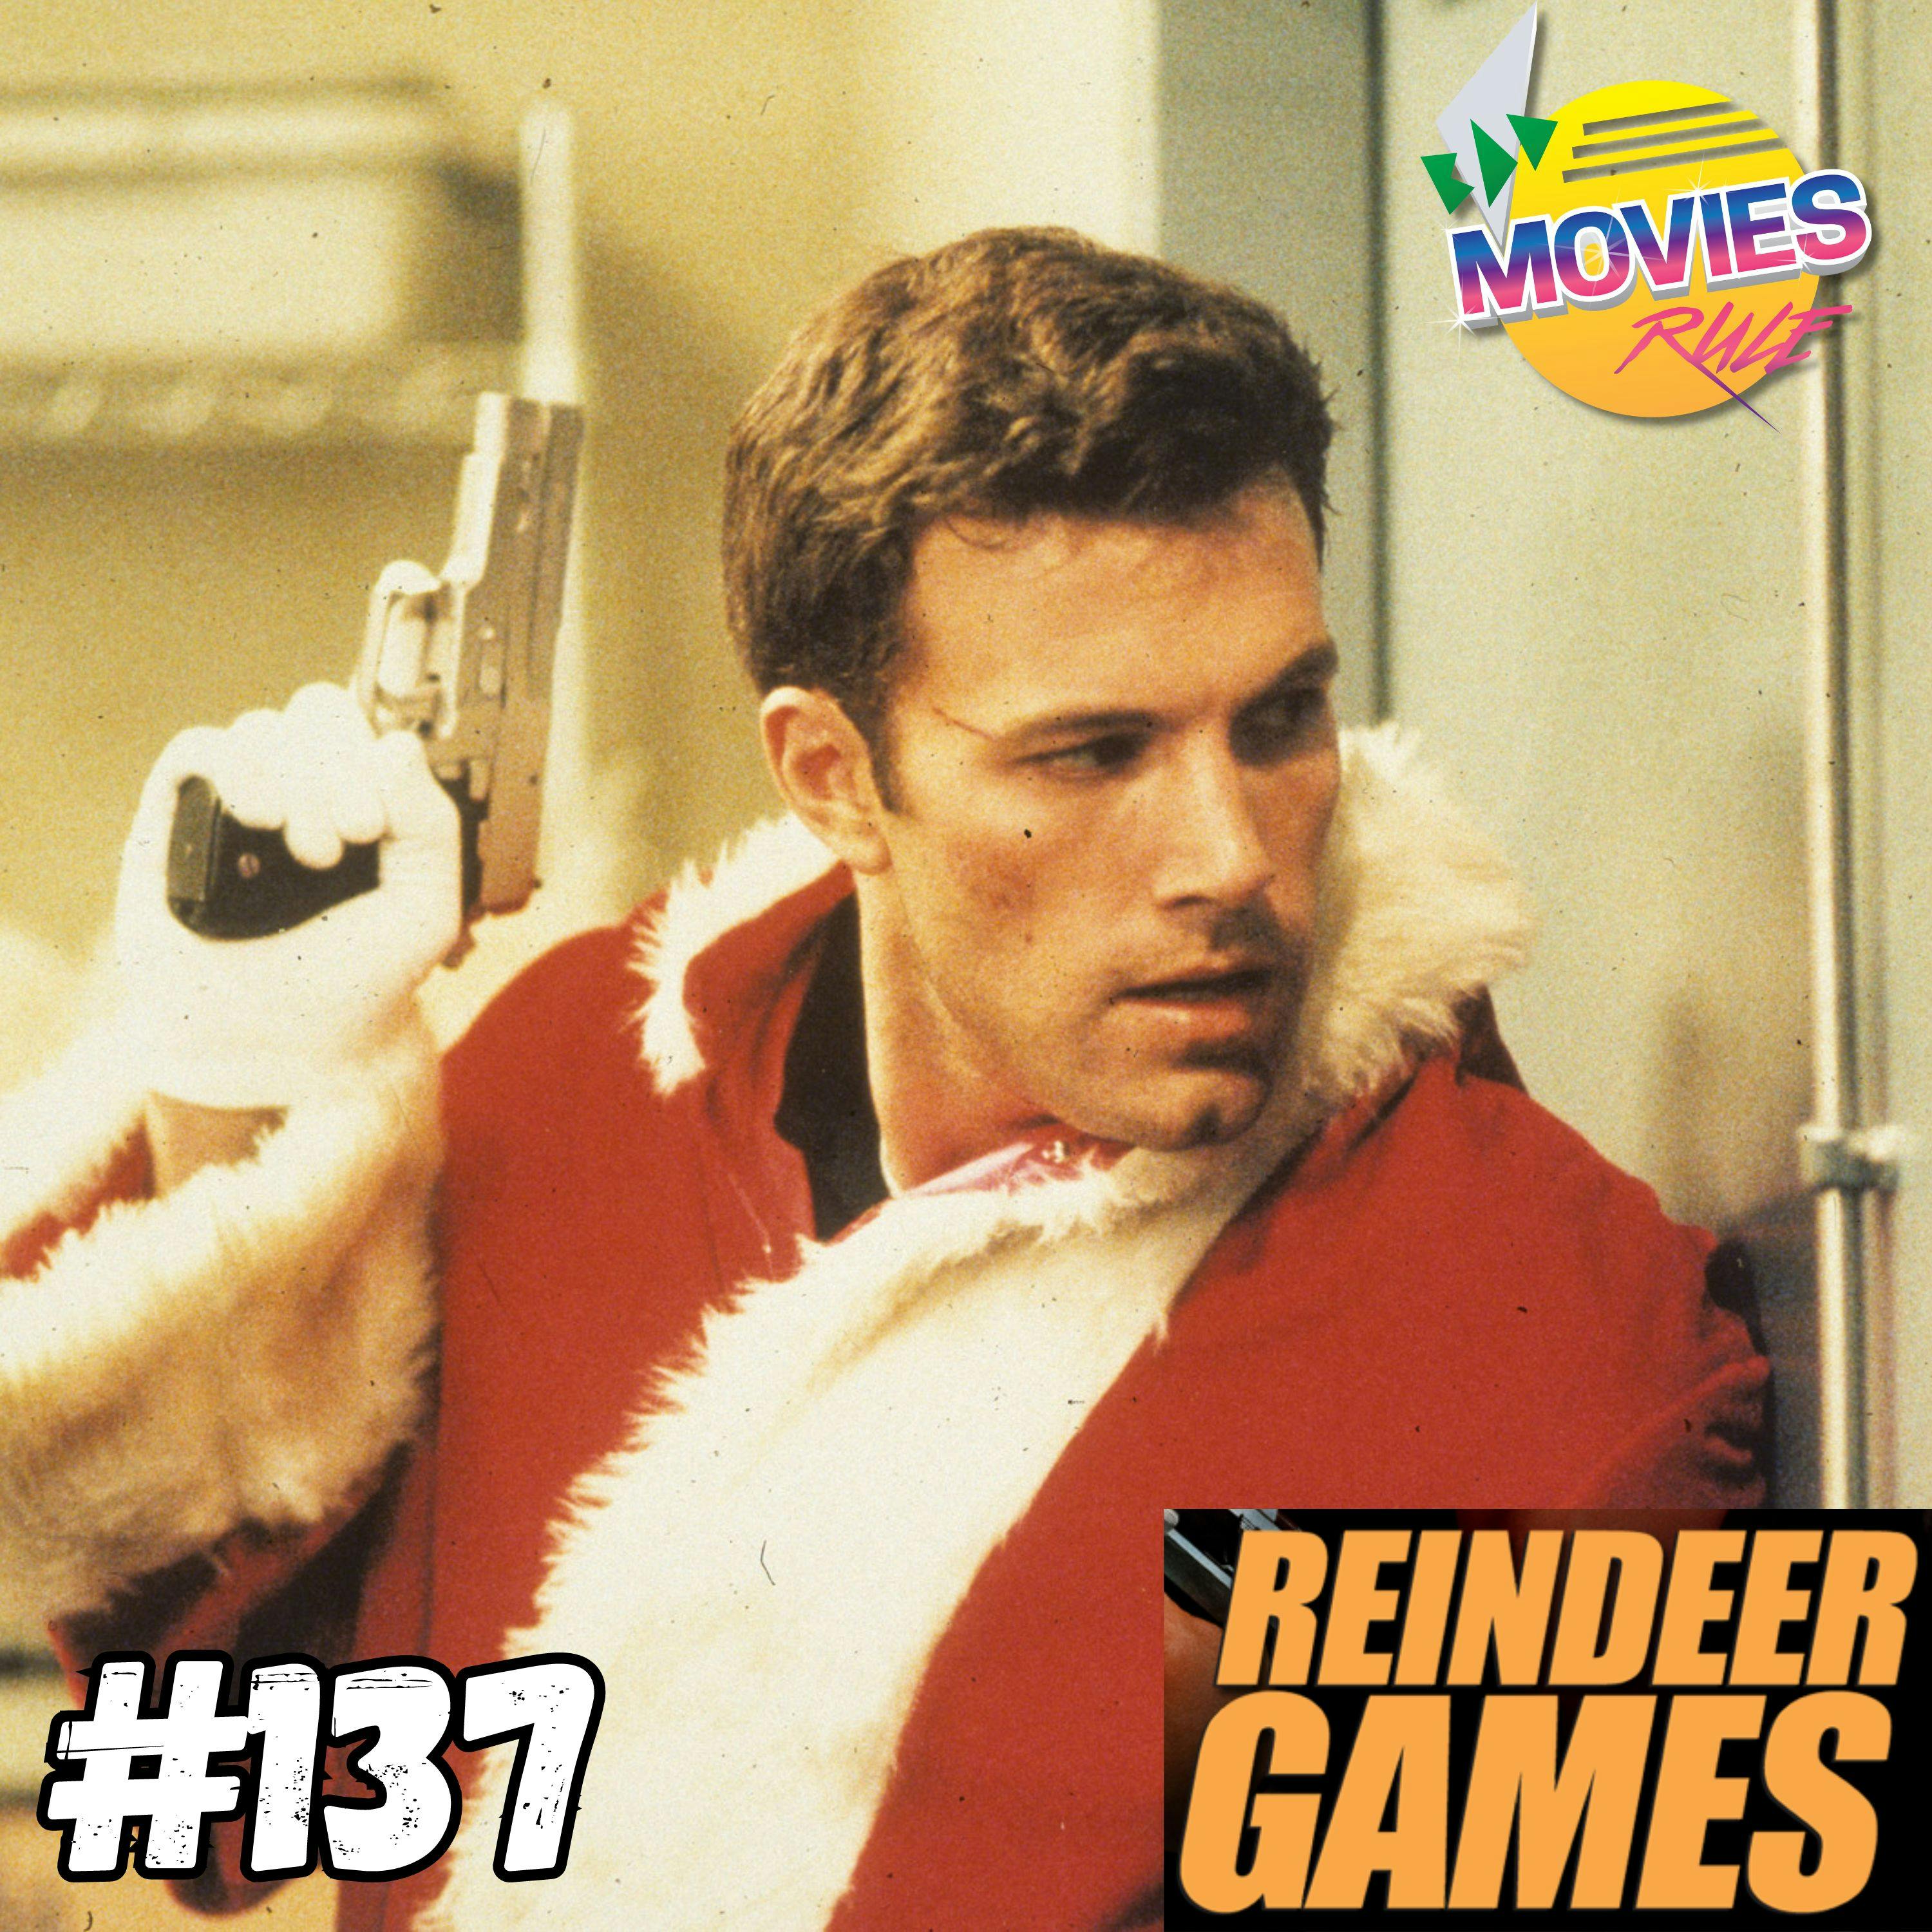 #137 Reindeer Games (2000)